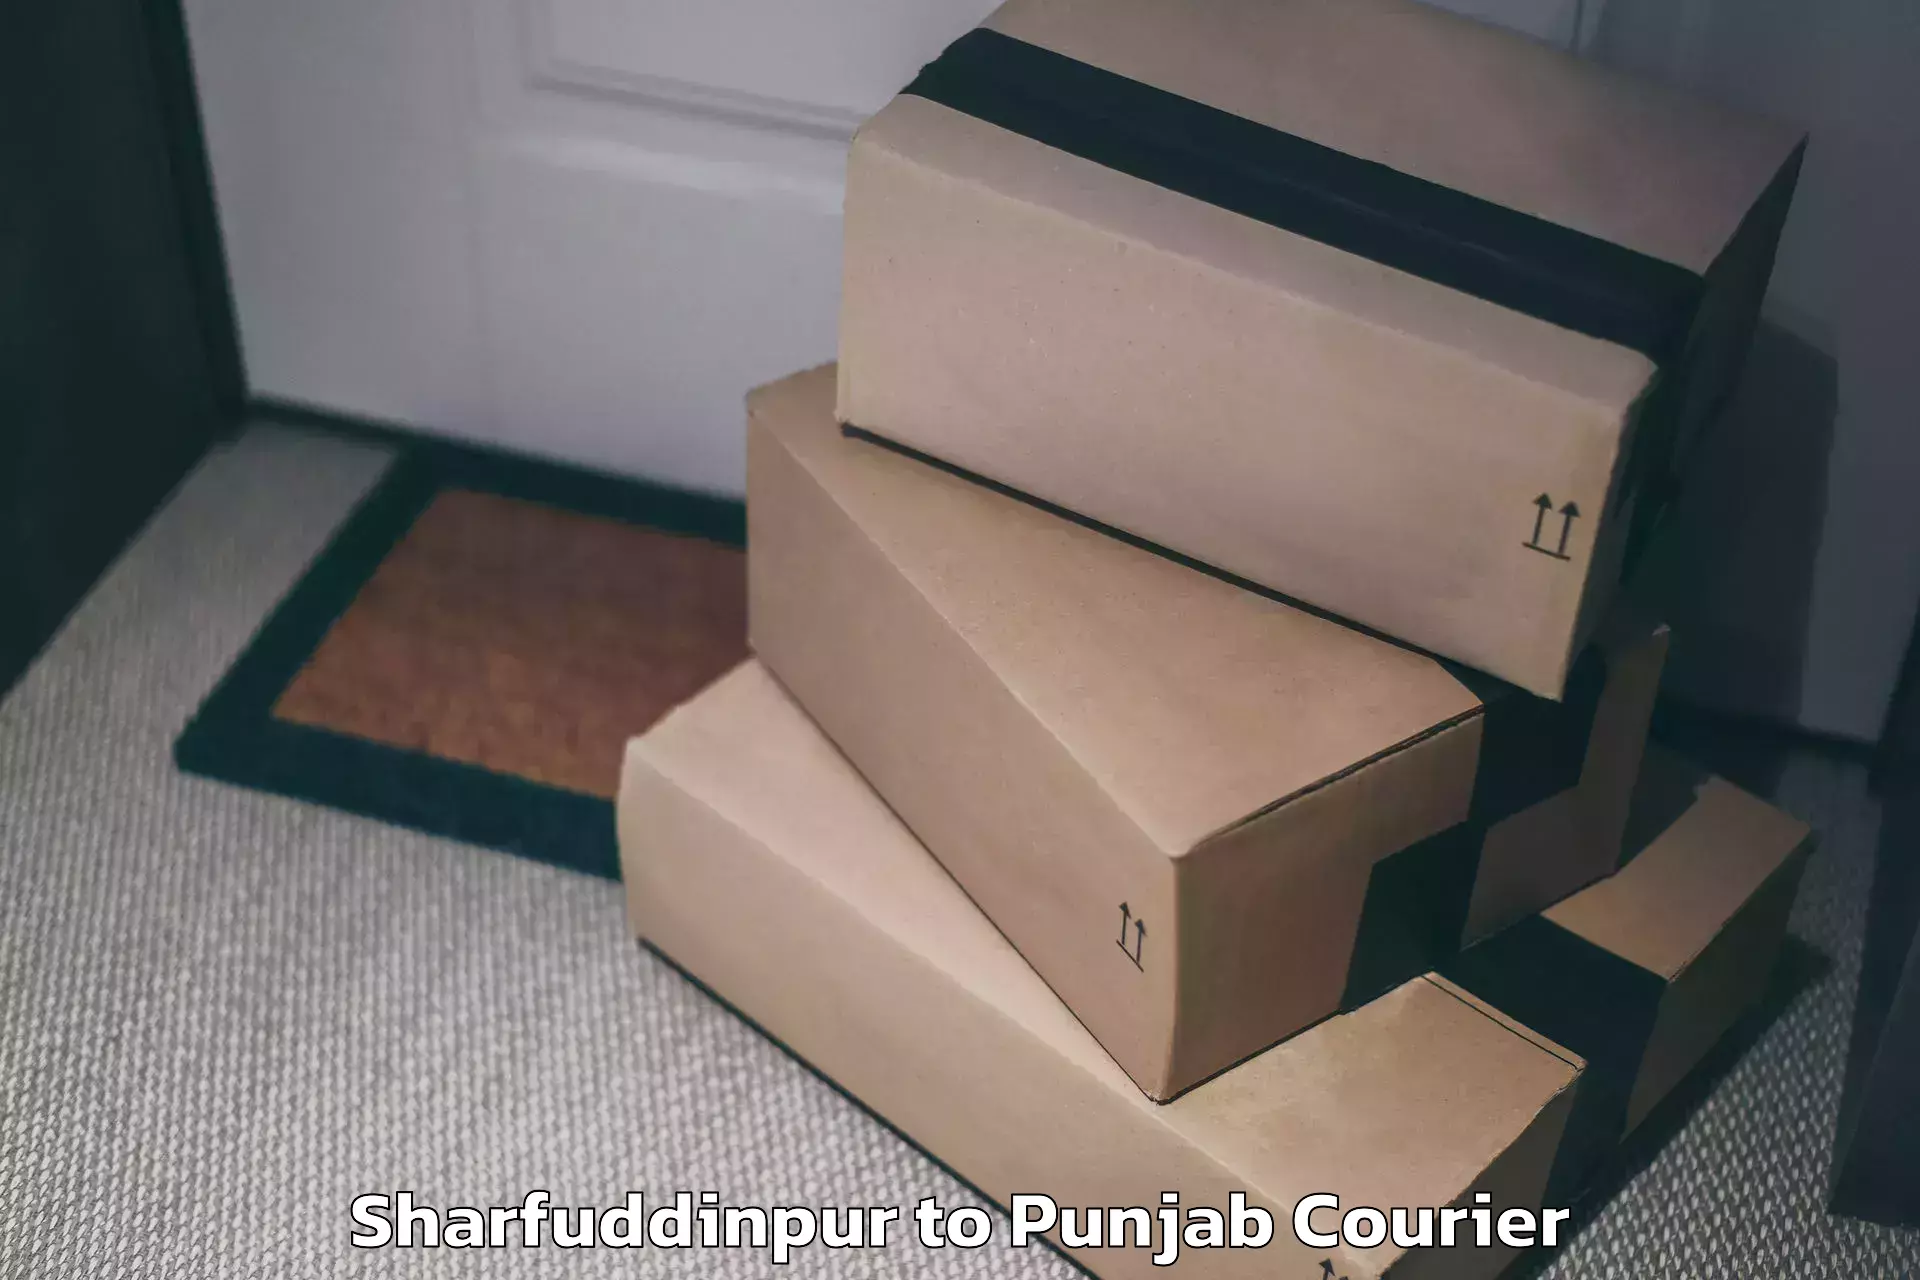 Holiday season luggage delivery Sharfuddinpur to Amritsar